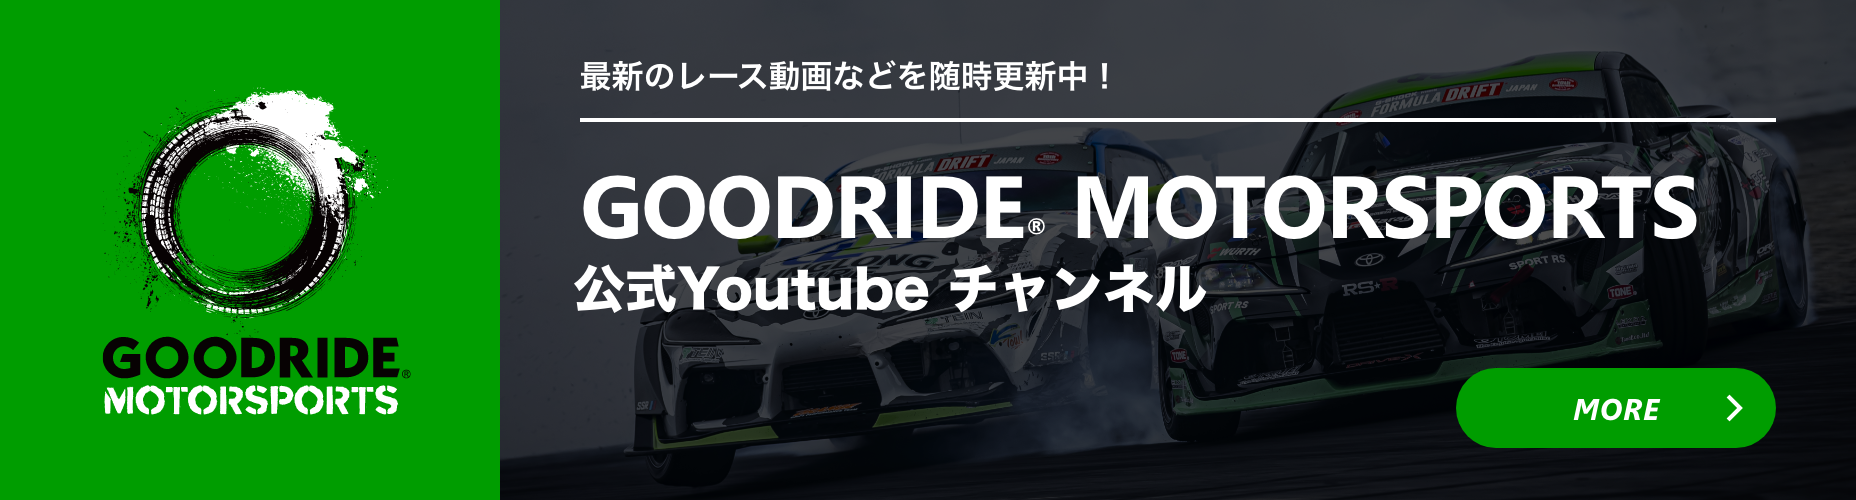 GOODRIDE MOTORSPORTS 公式Youtubeチャンネル